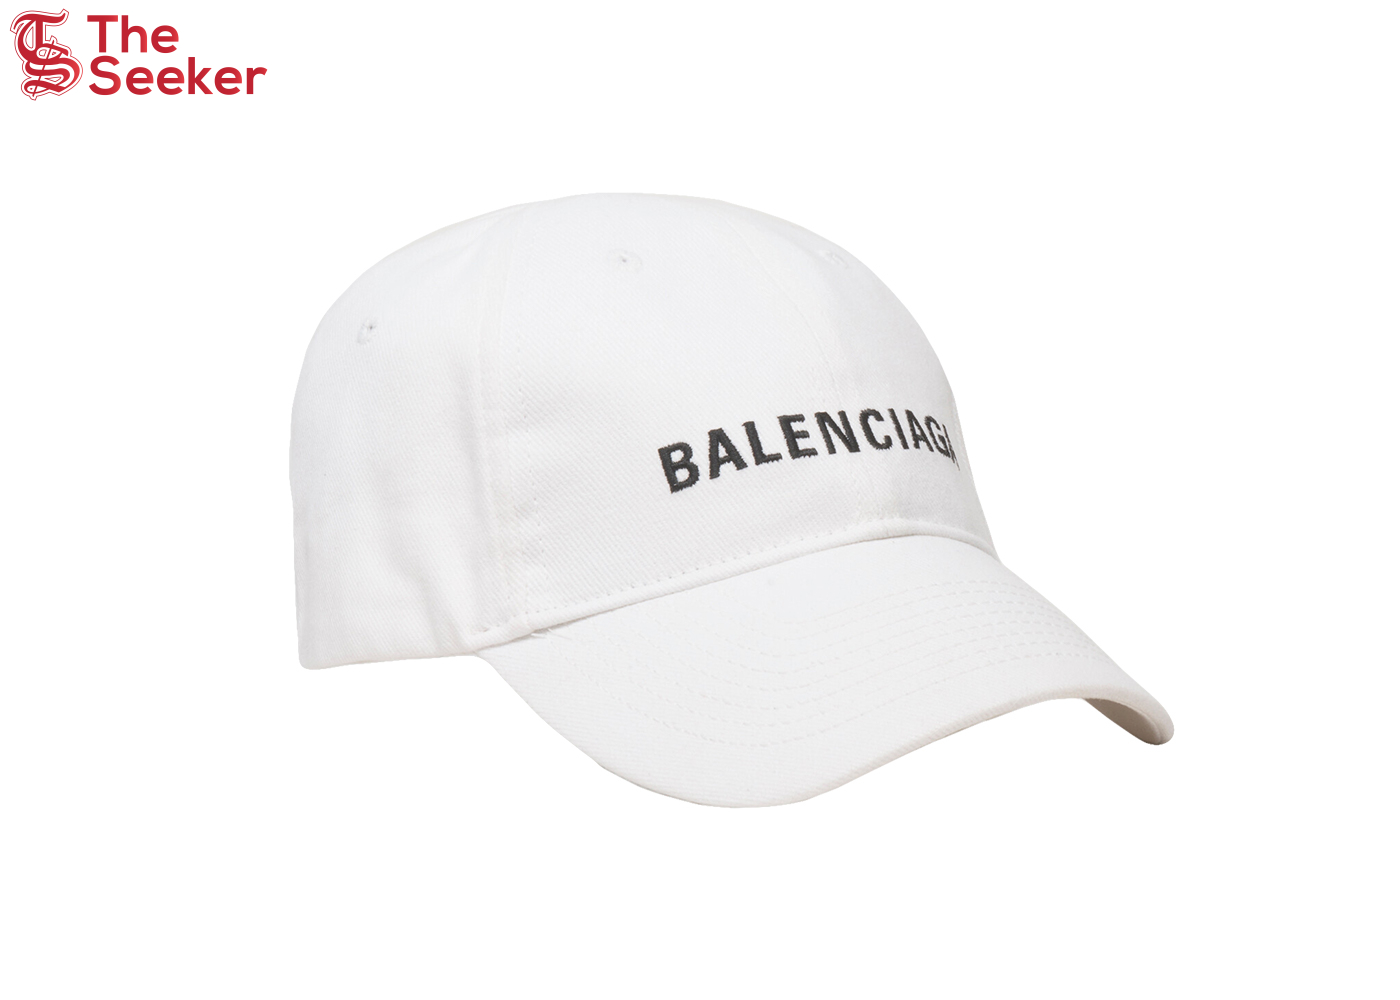 Balenciaga Logo Cap White/Black